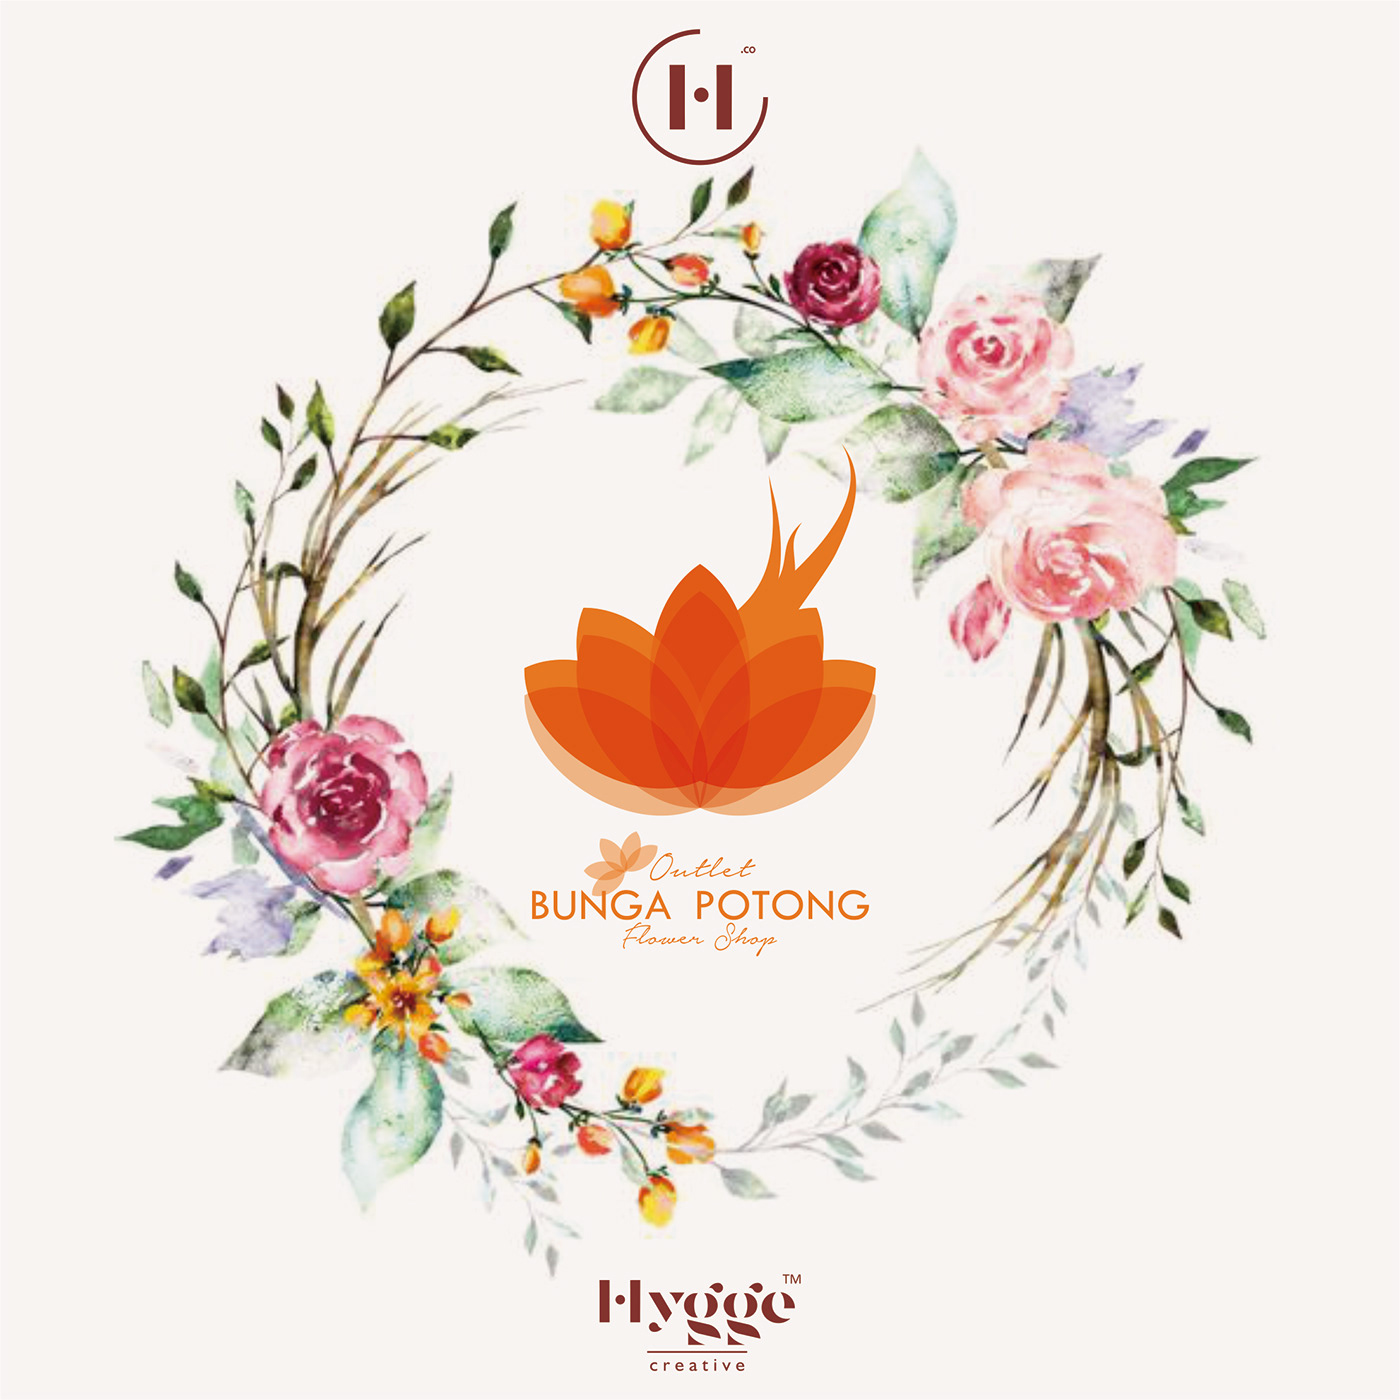 Hygge Graphic Hygge Design